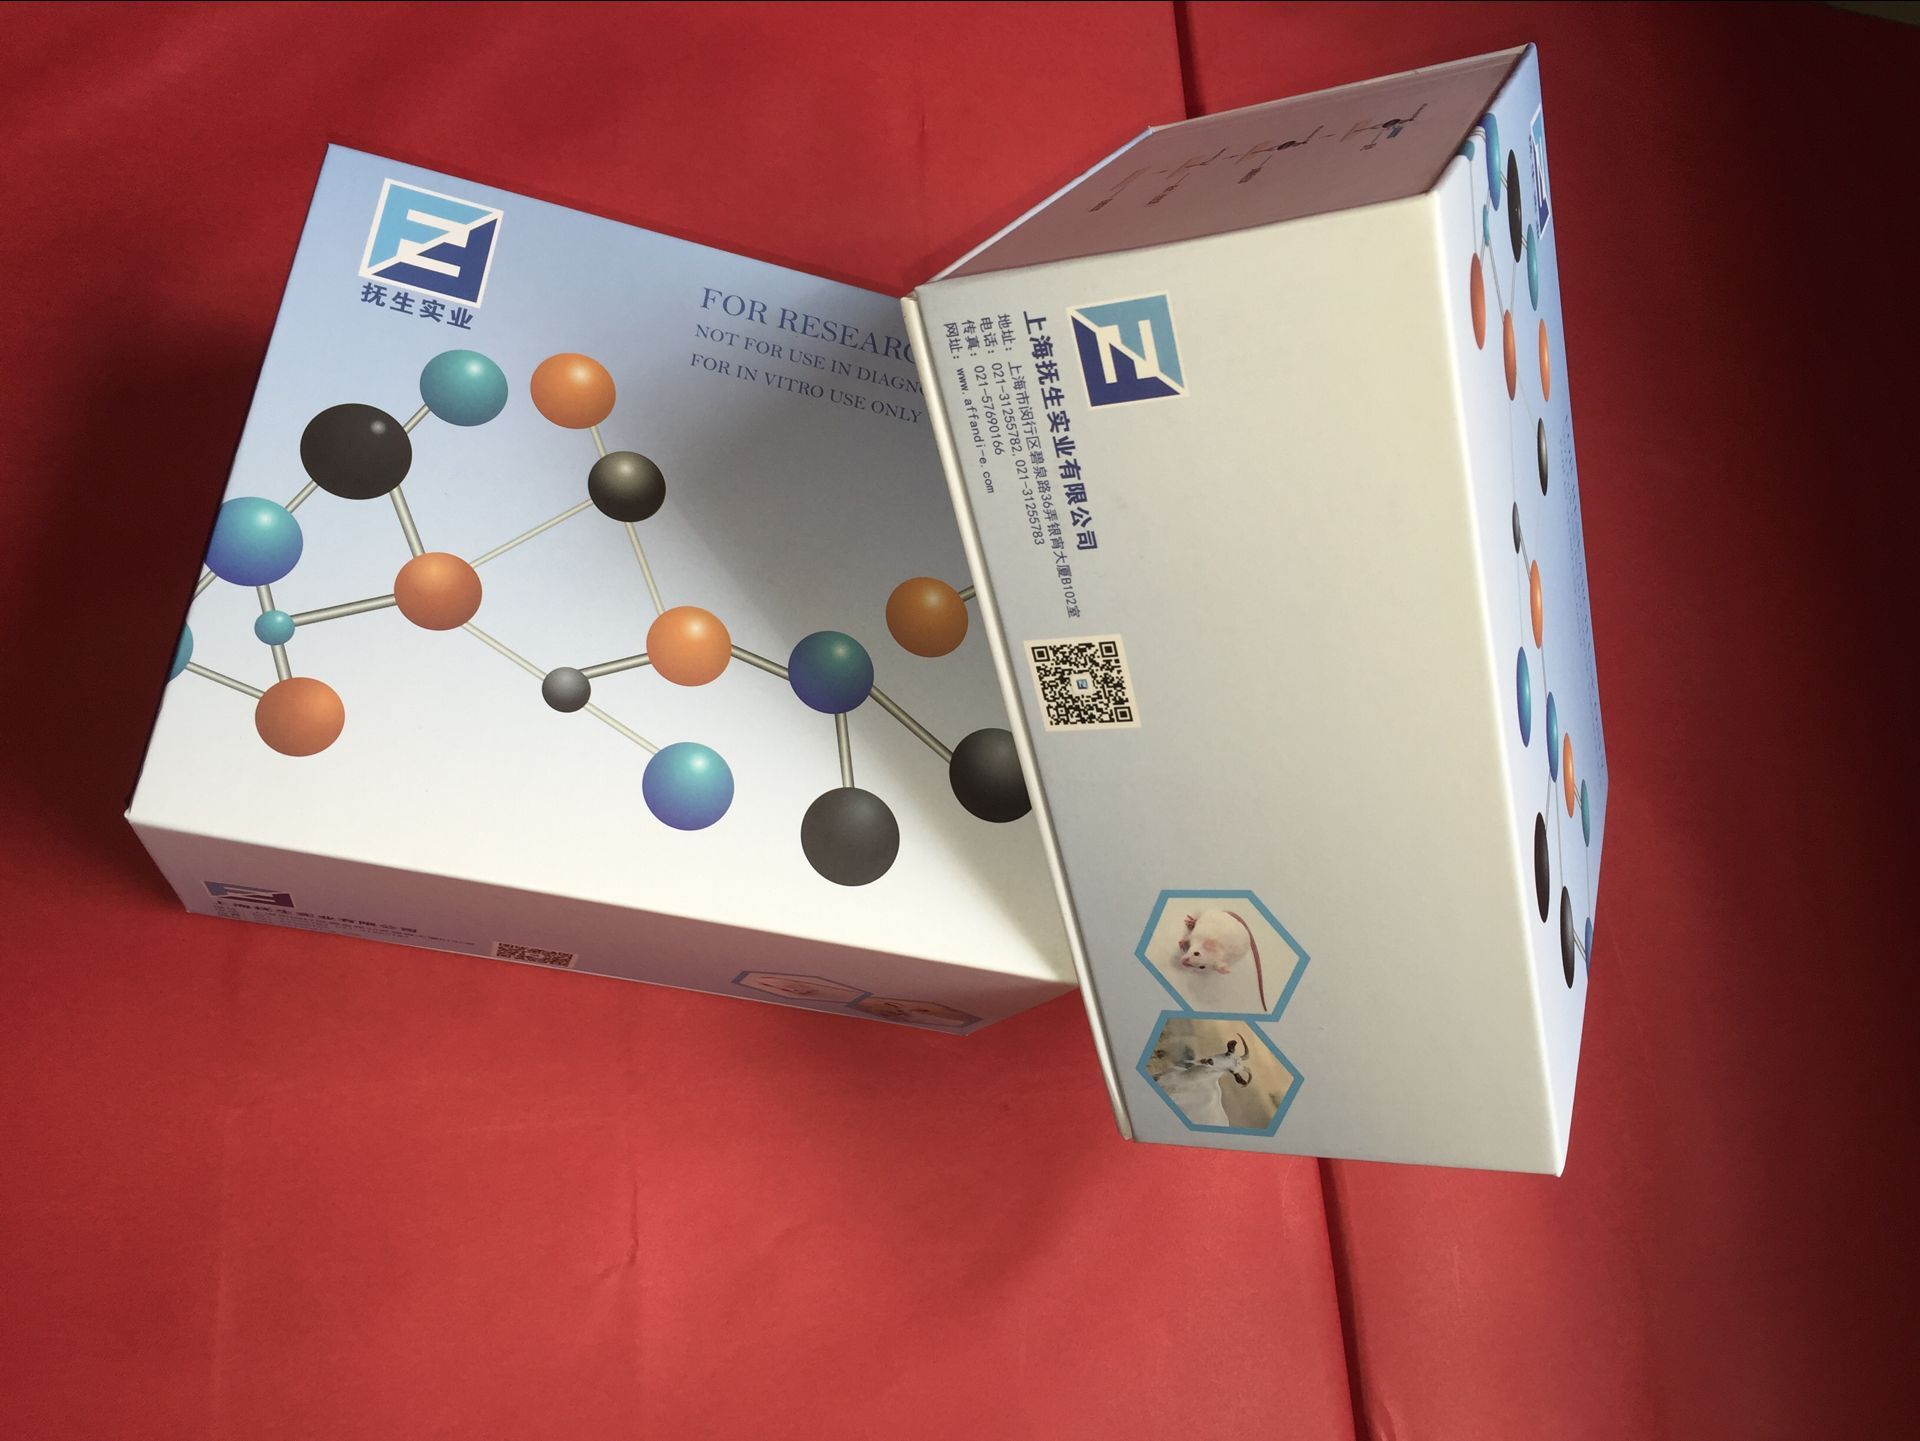 牛一氧化氮(NO)elisa检测试剂盒图片